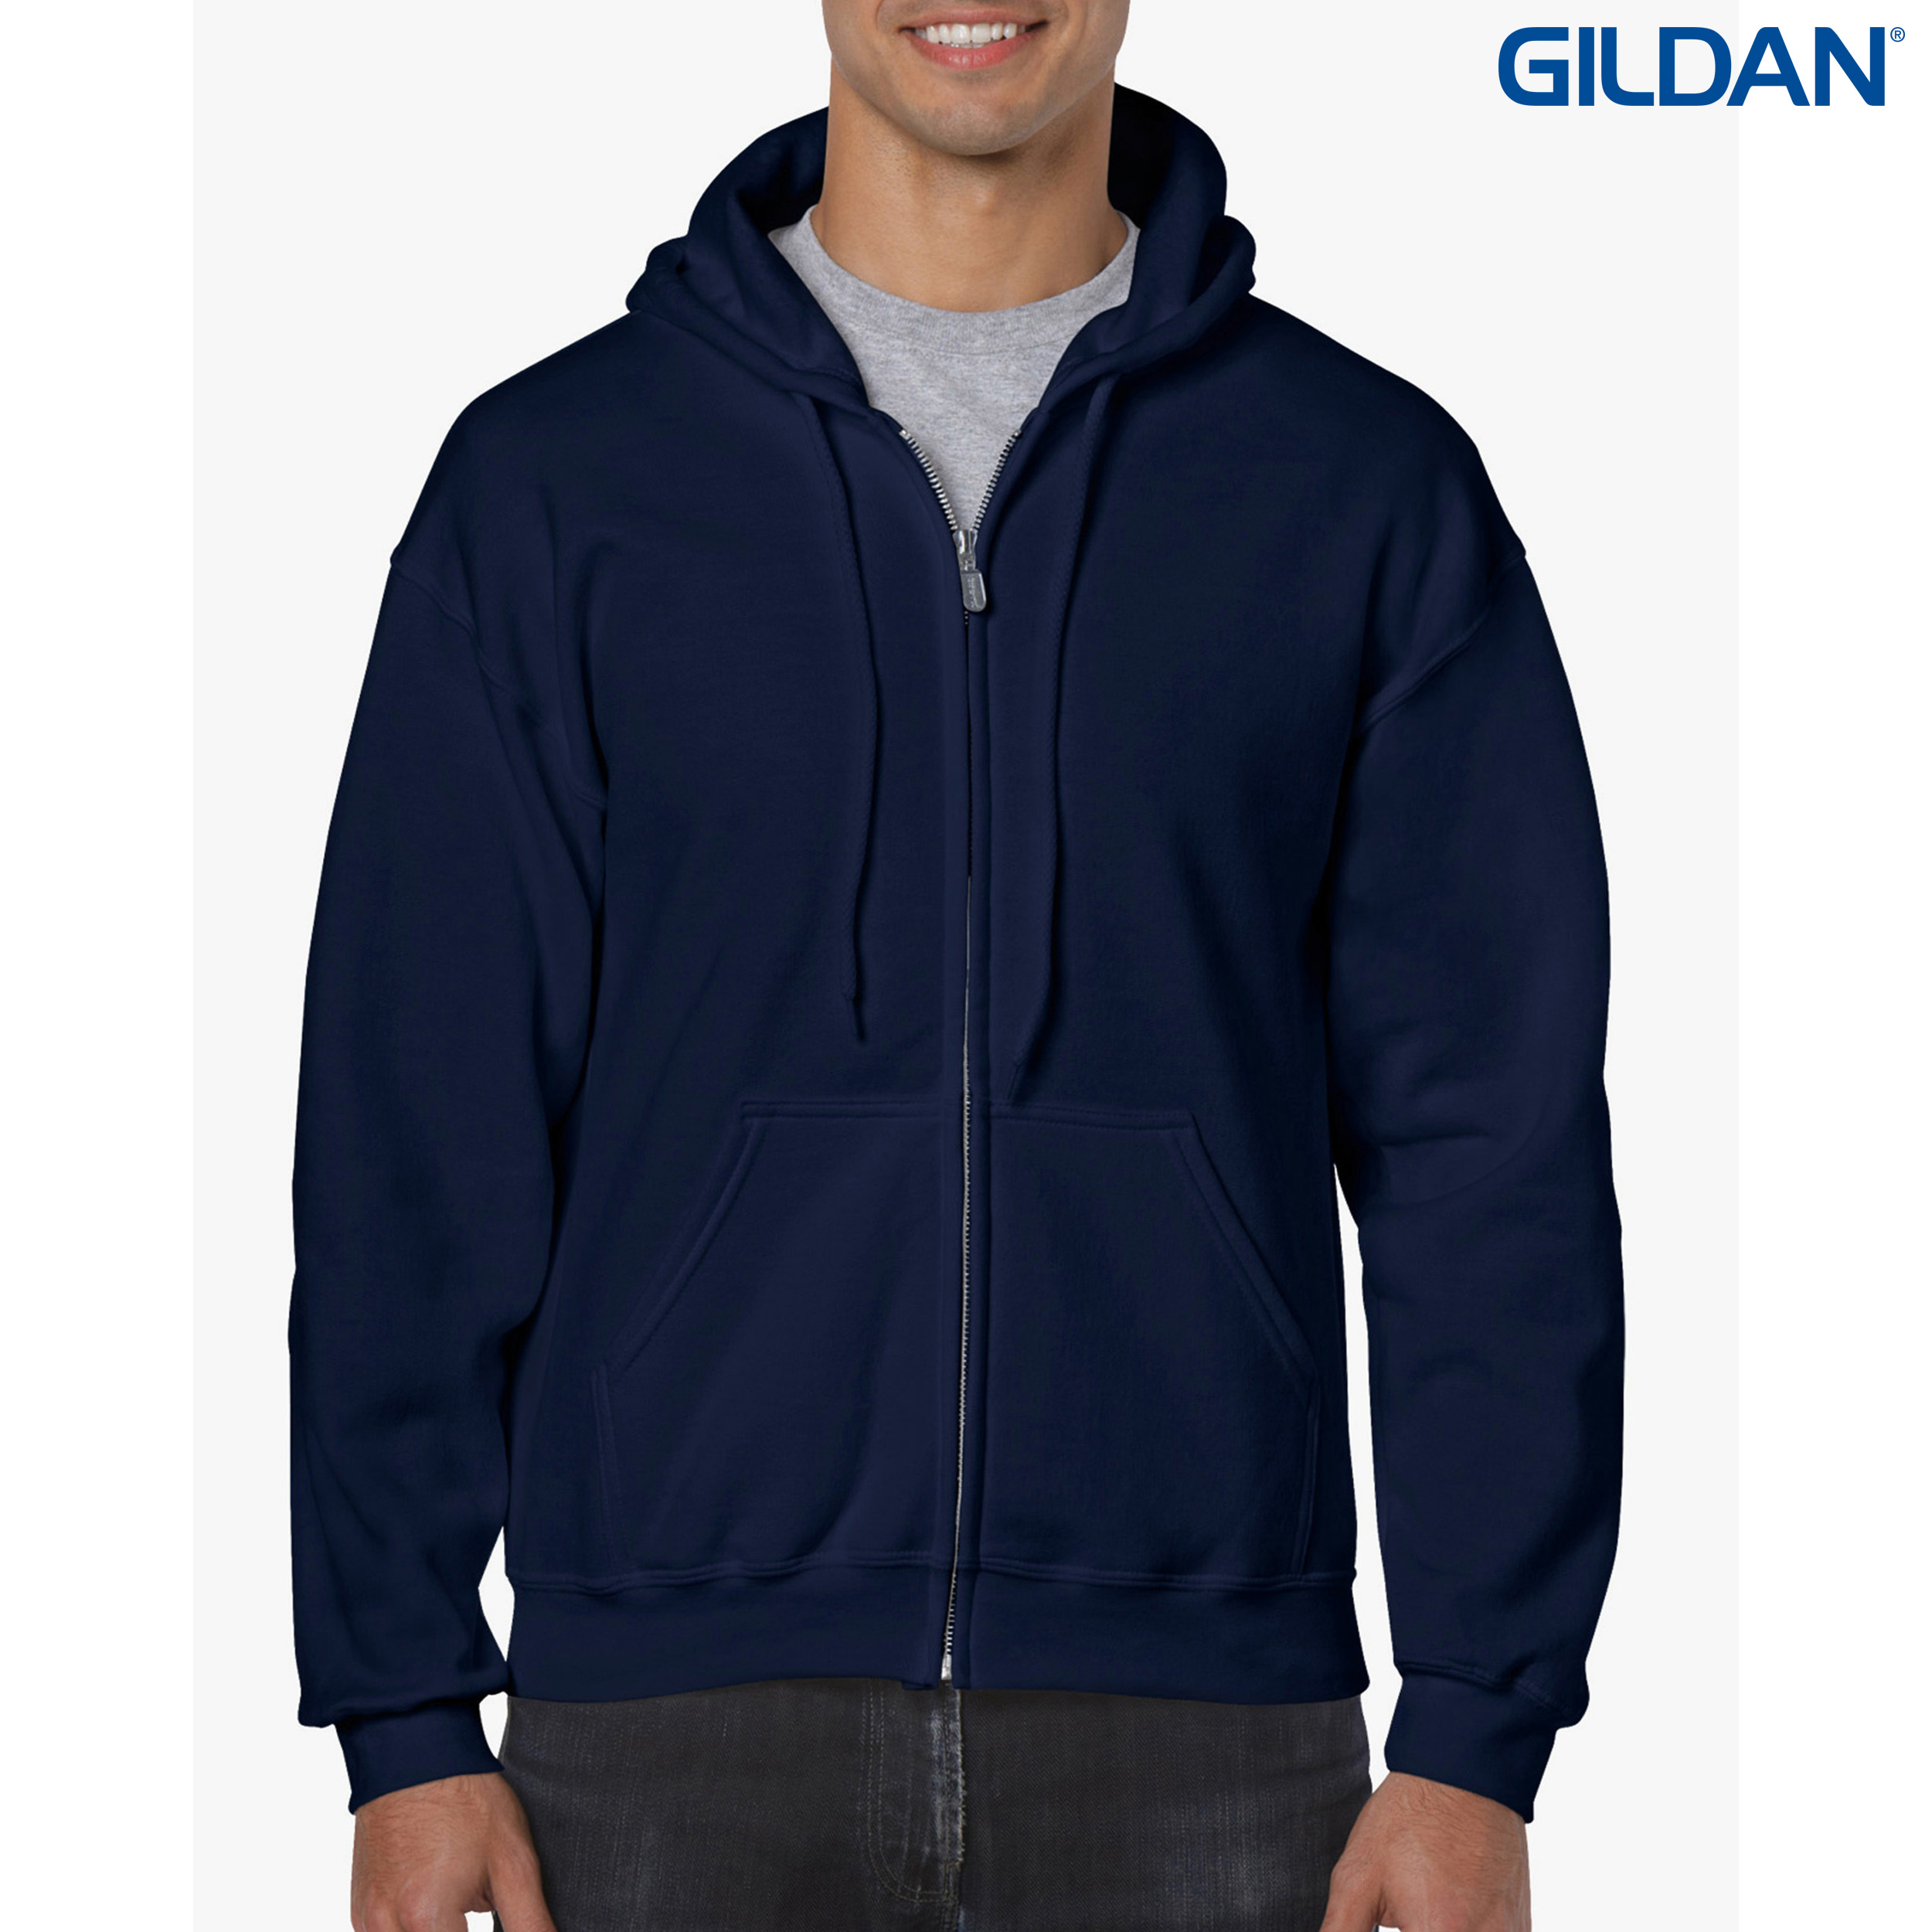 Premium Apparel 18600 Gildan Adult Zip Hoody